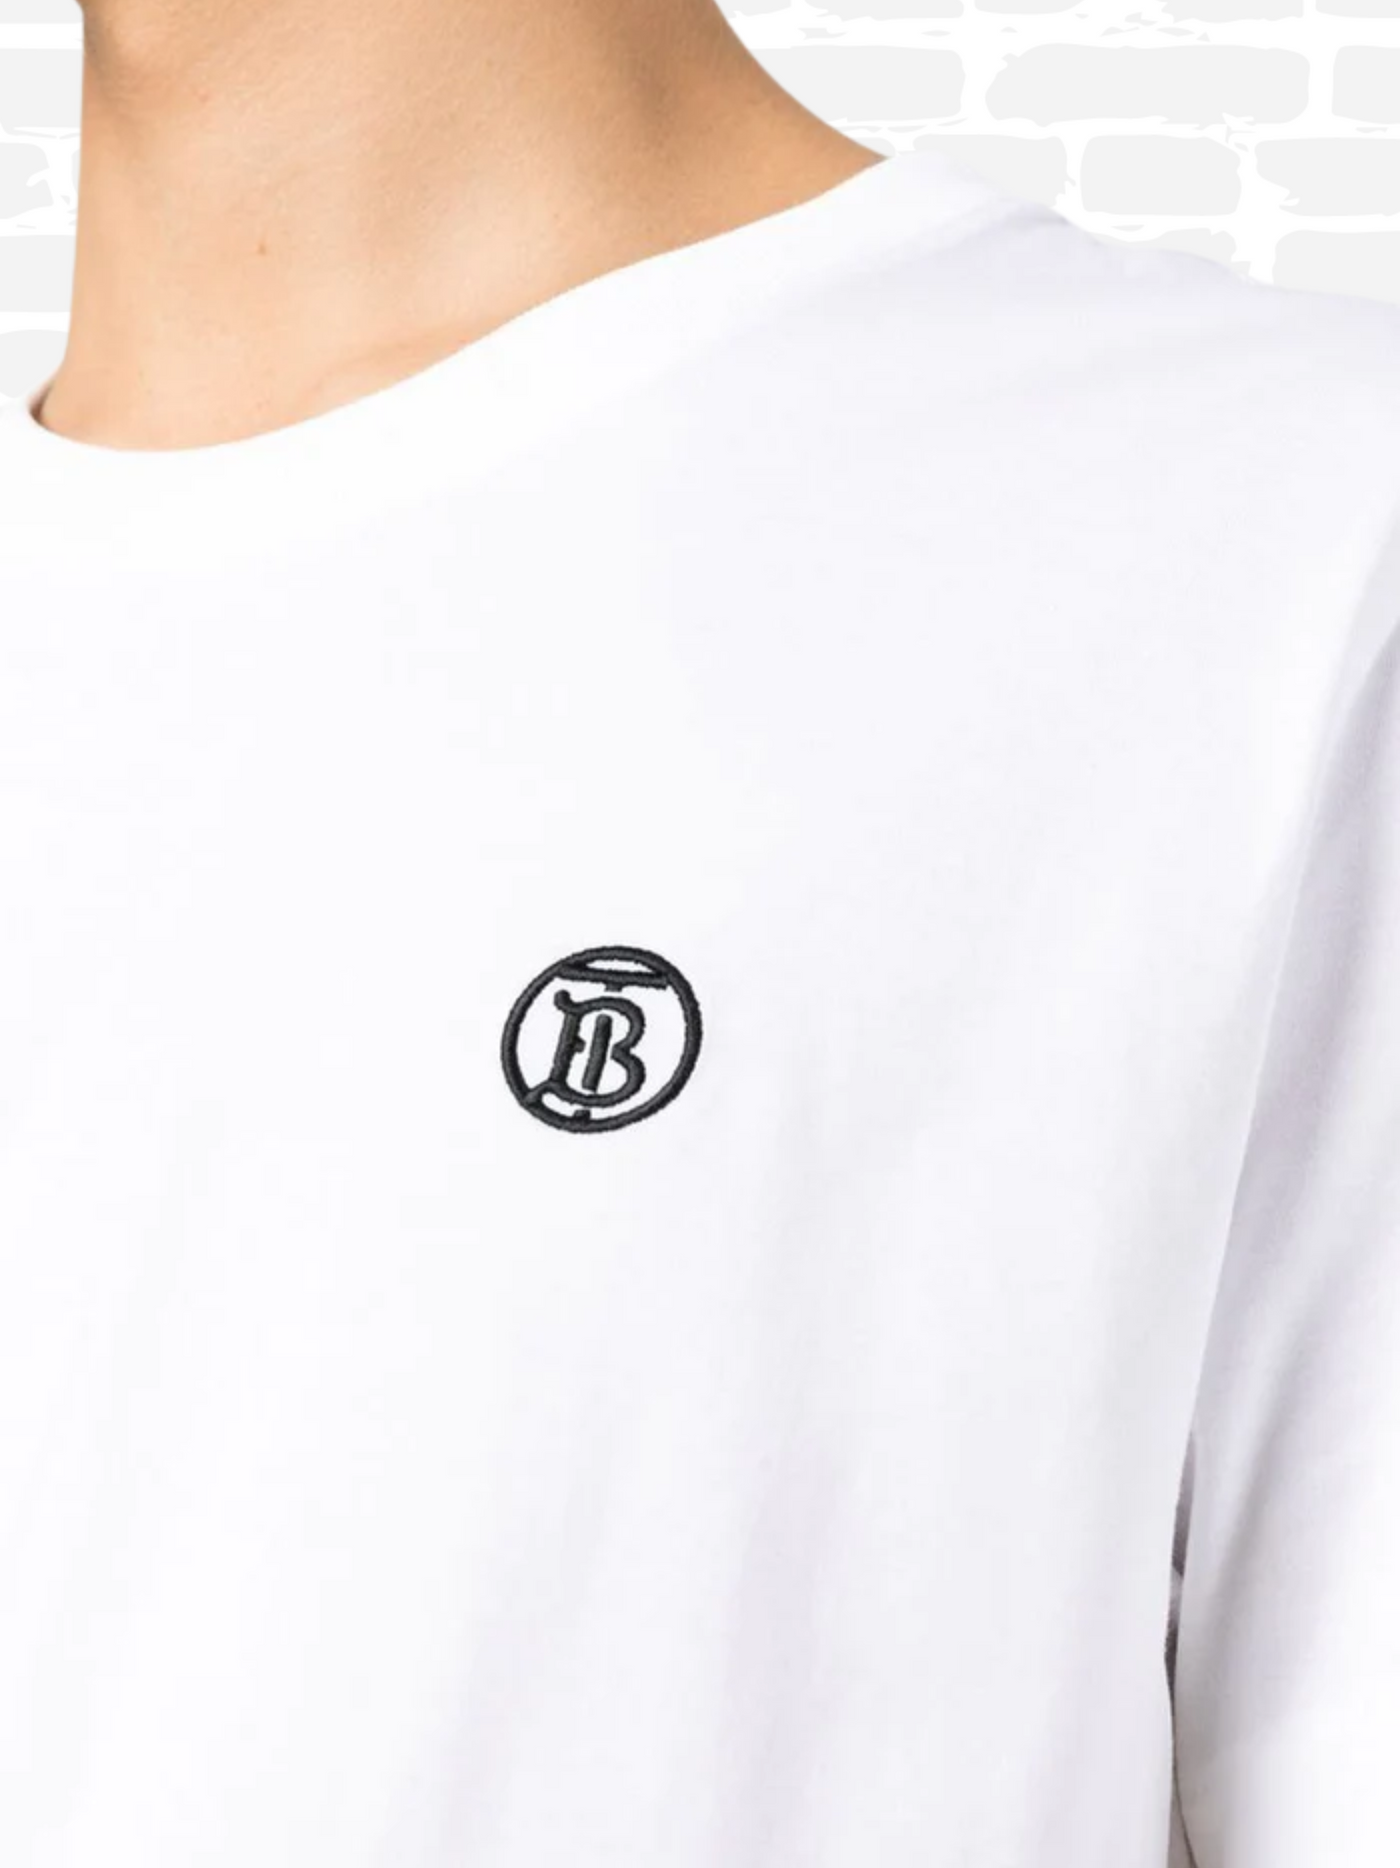 ברברי טי שירט צבע לבן logo embroidered T-shirt